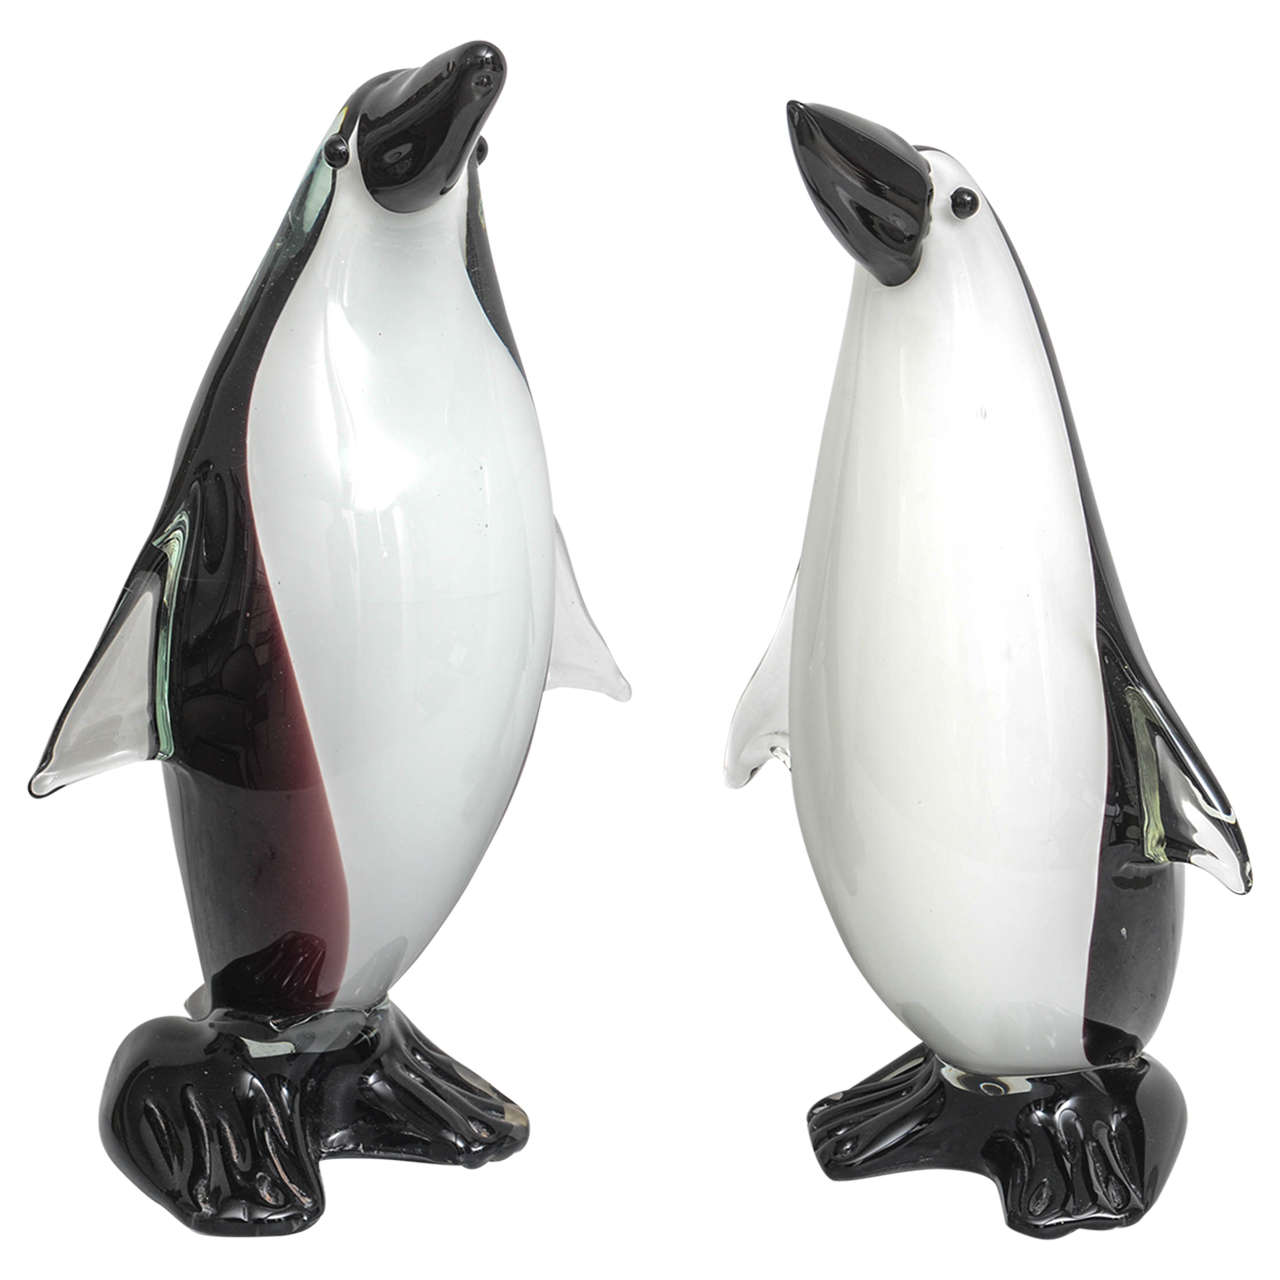  Pair of "Cristalleria Stile D'Arte" Murano Style Glass Penguins